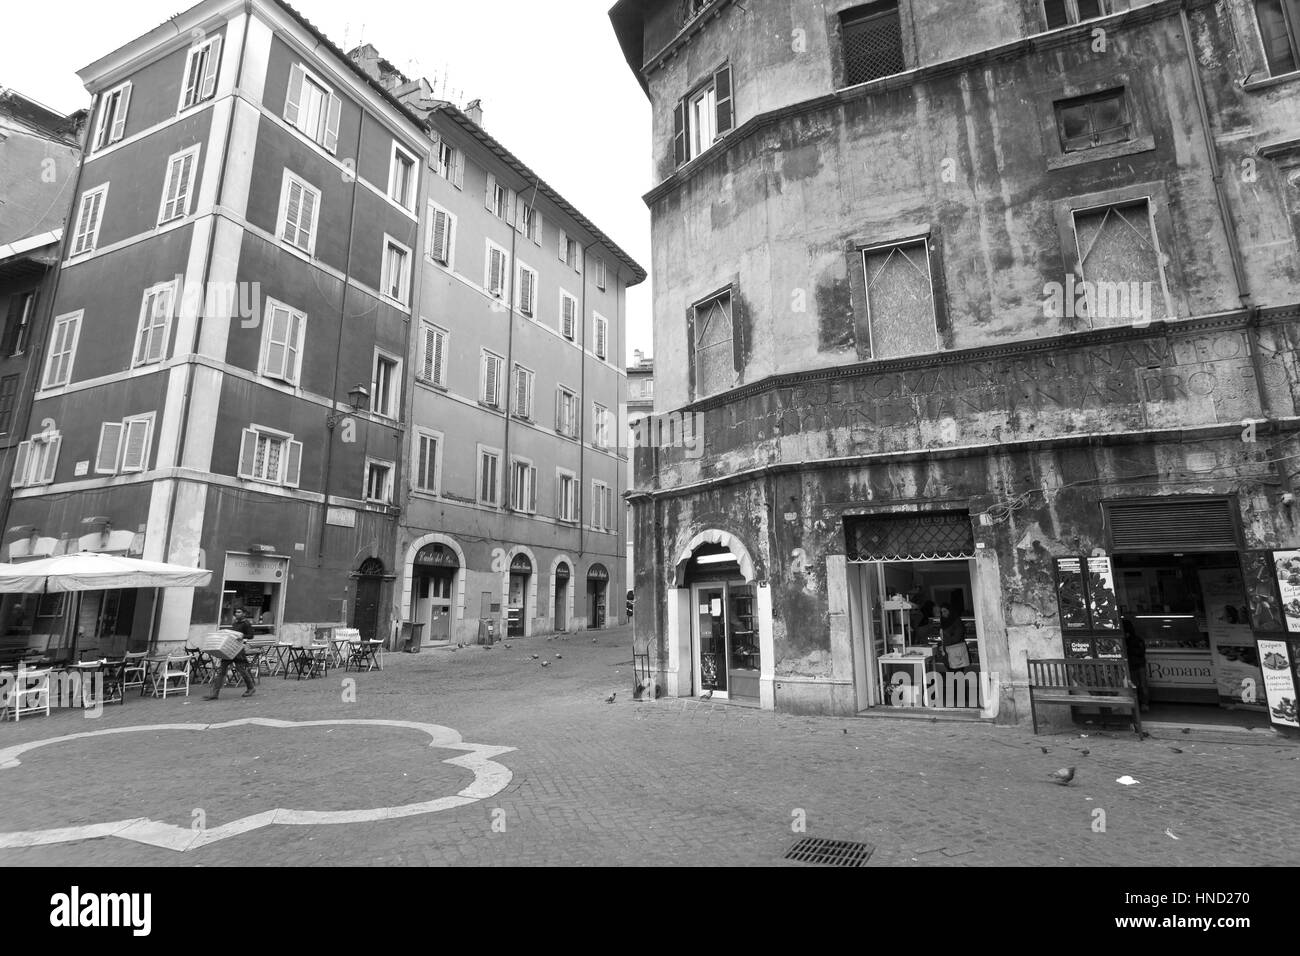 Roma, Italia - 8 Gennaio 2017: le persone non identificate snooping e visitare Roma il ghetto ebraico. Foto Stock